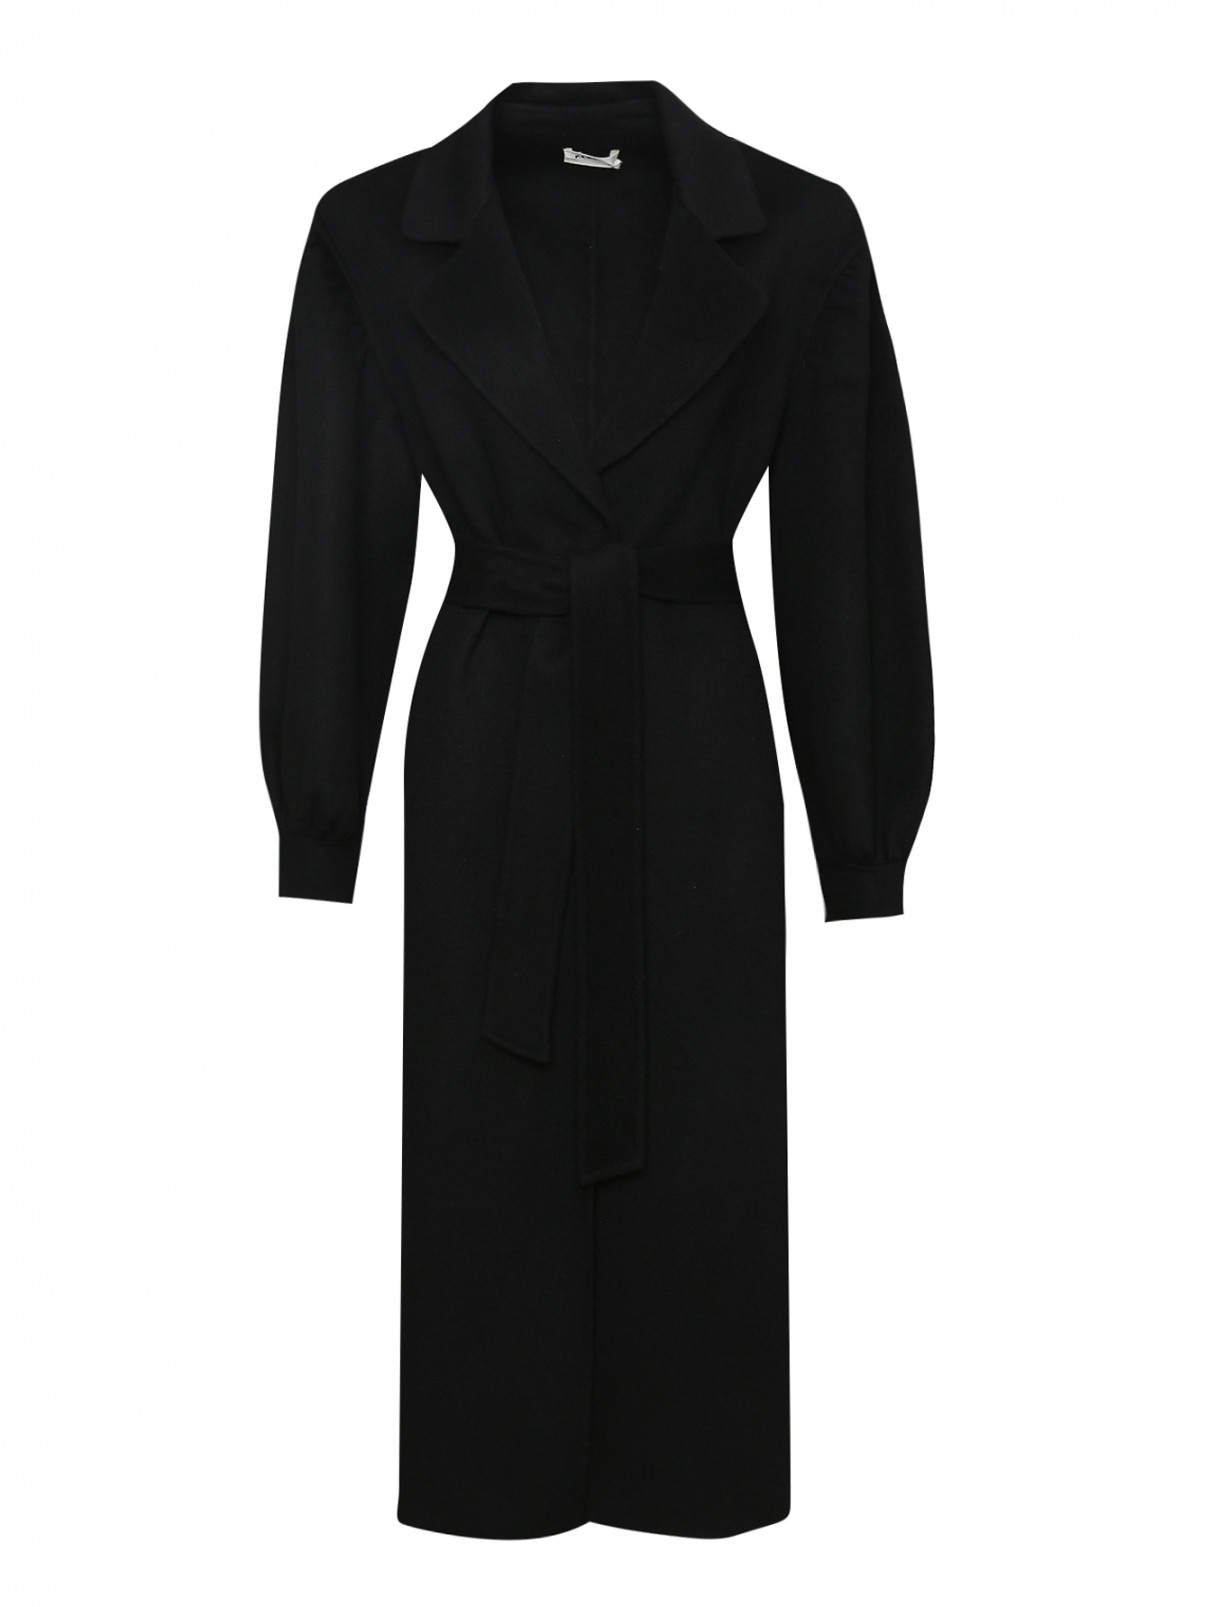 Пальто из шерсти с объемными рукавами P.A.R.O.S.H.  –  Общий вид  – Цвет:  Черный